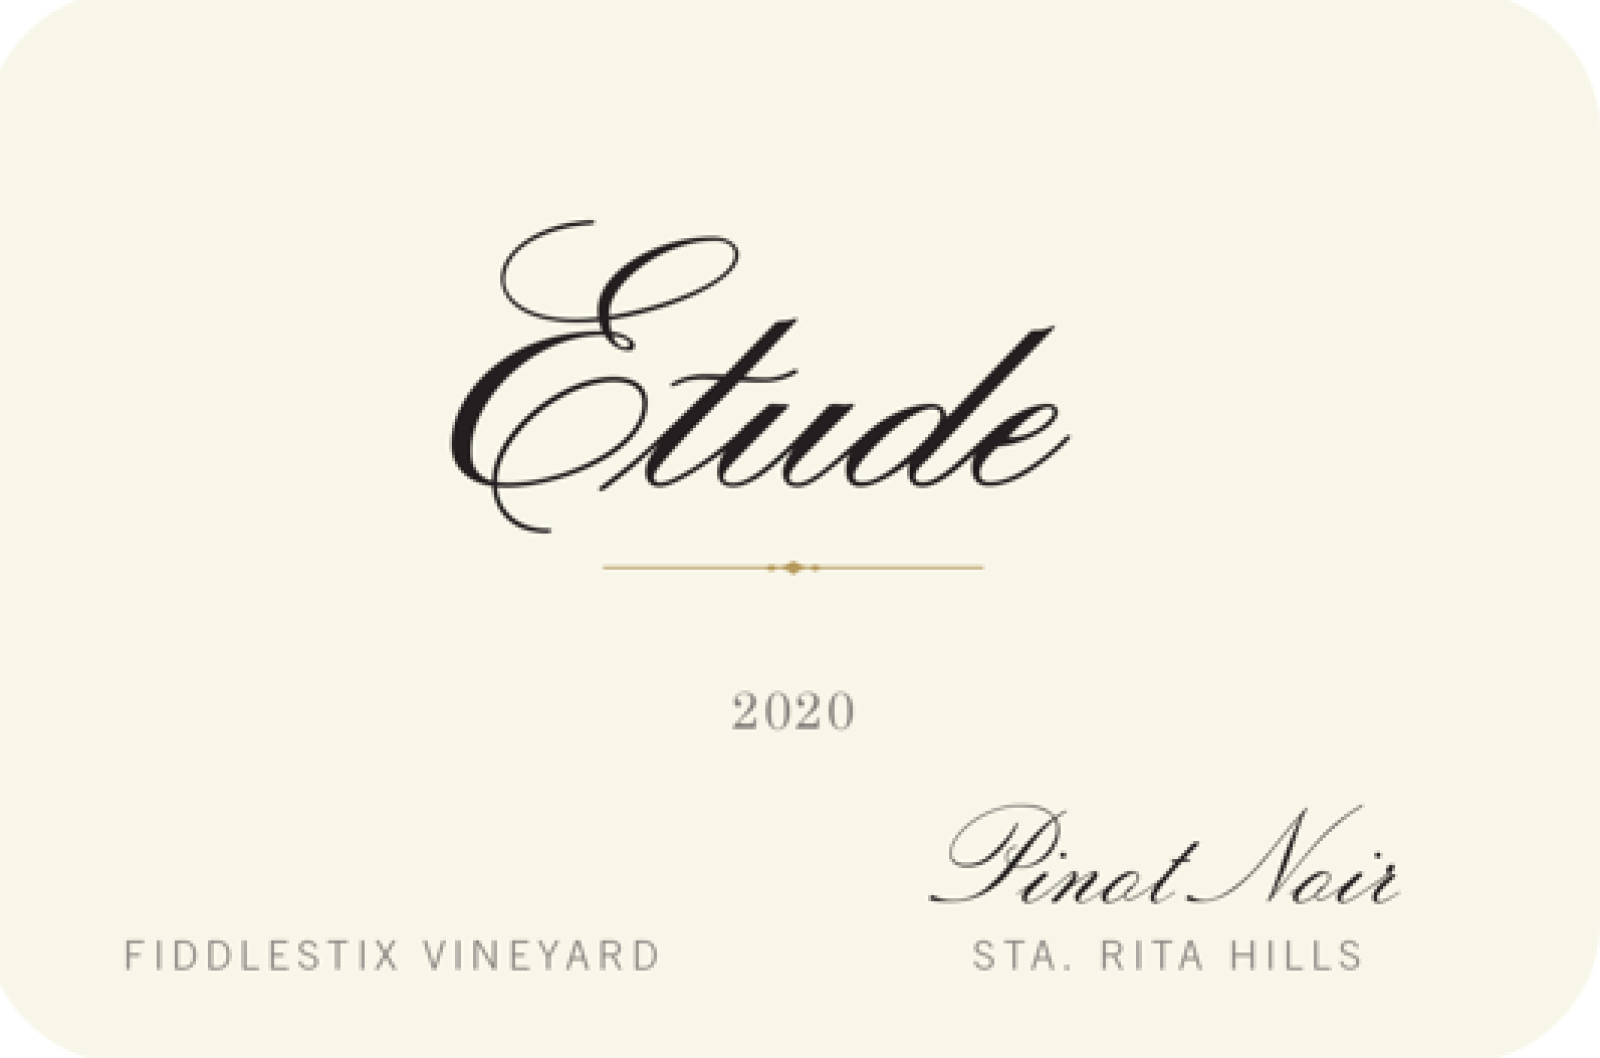 Etude Fiddlestix Vineyard Pinot Noir 2020